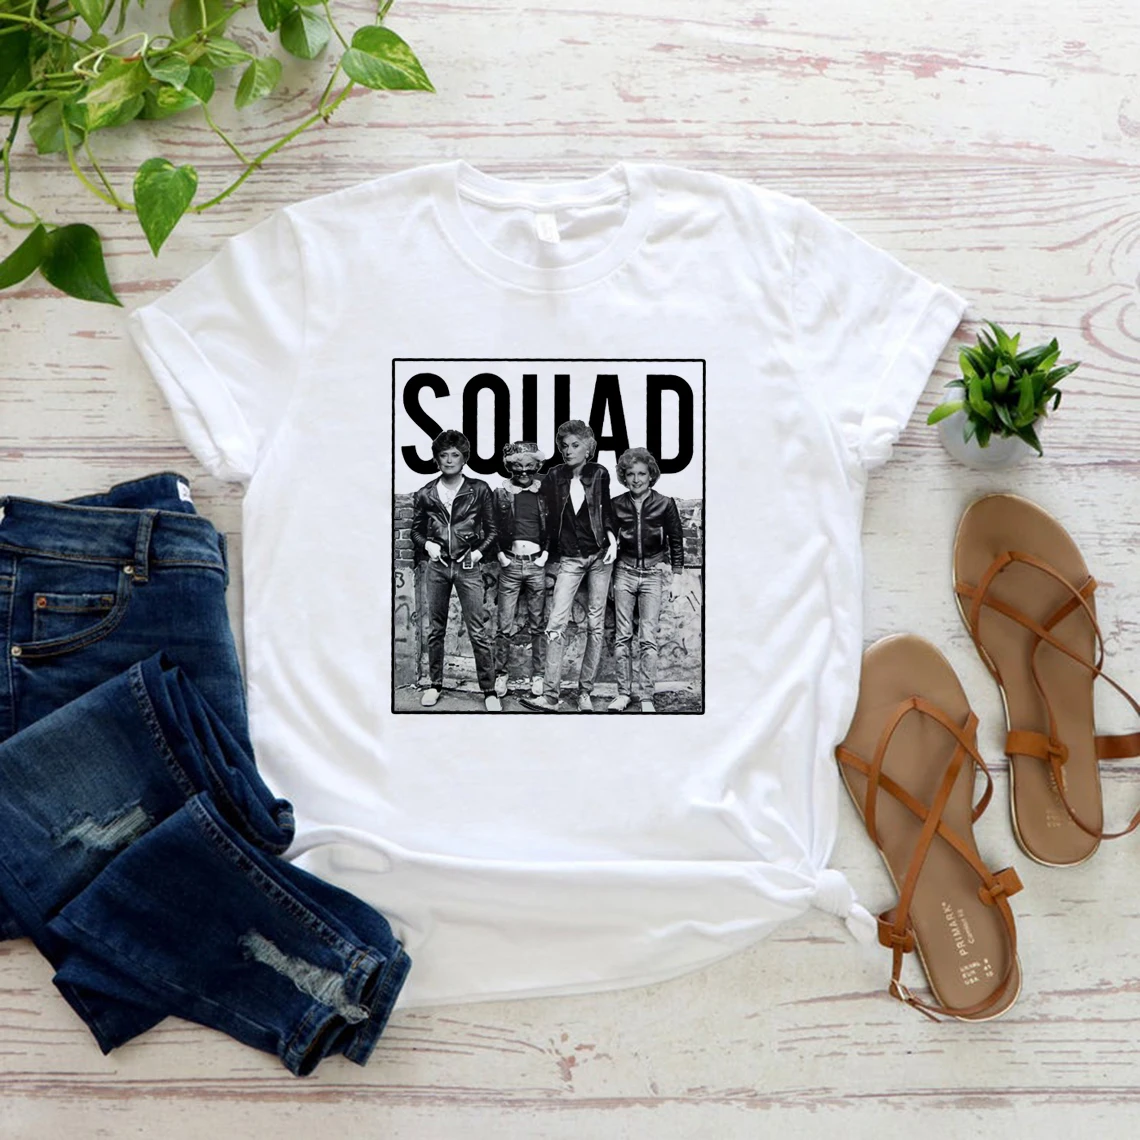 

Футболка с надписью «Stay Golden Team», Классическая футболка в стиле ретро 80-х годов для ТВ-шоу с надписью «Best Friends футболка "Squad"», футболка большог...